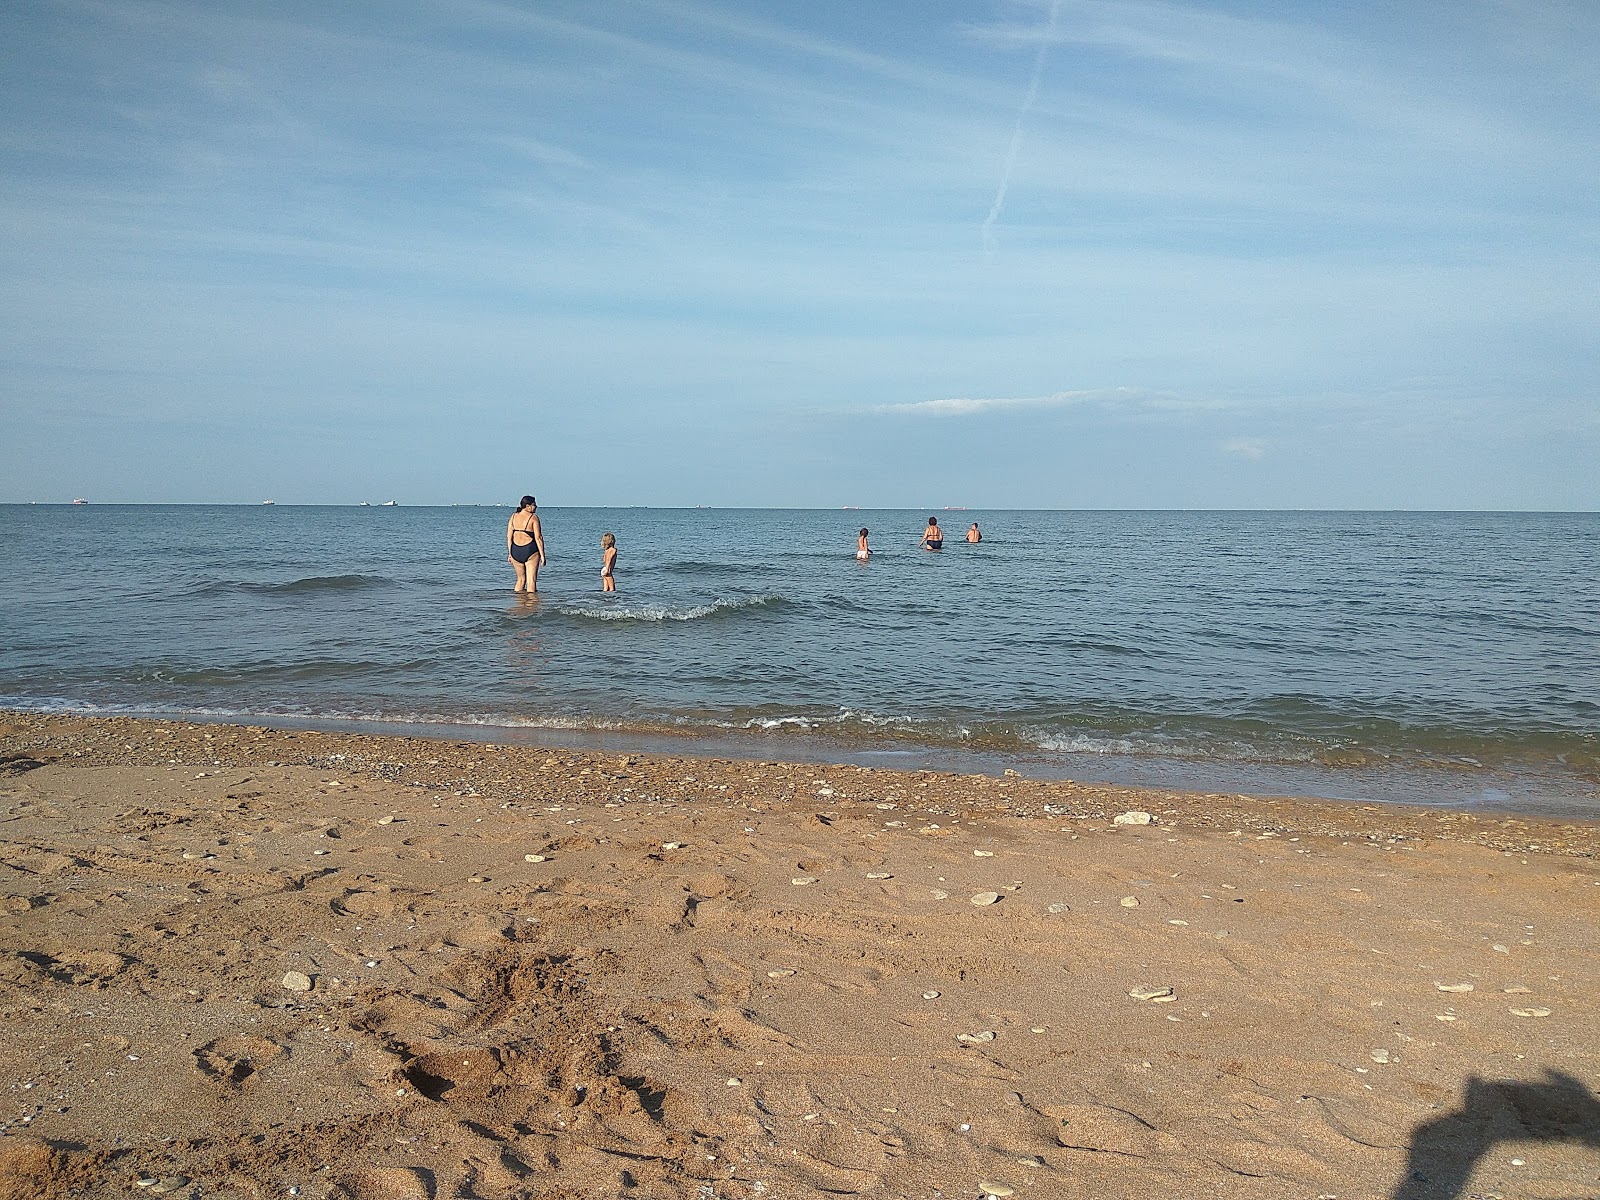 Plyazh Osoviny'in fotoğrafı geniş plaj ile birlikte